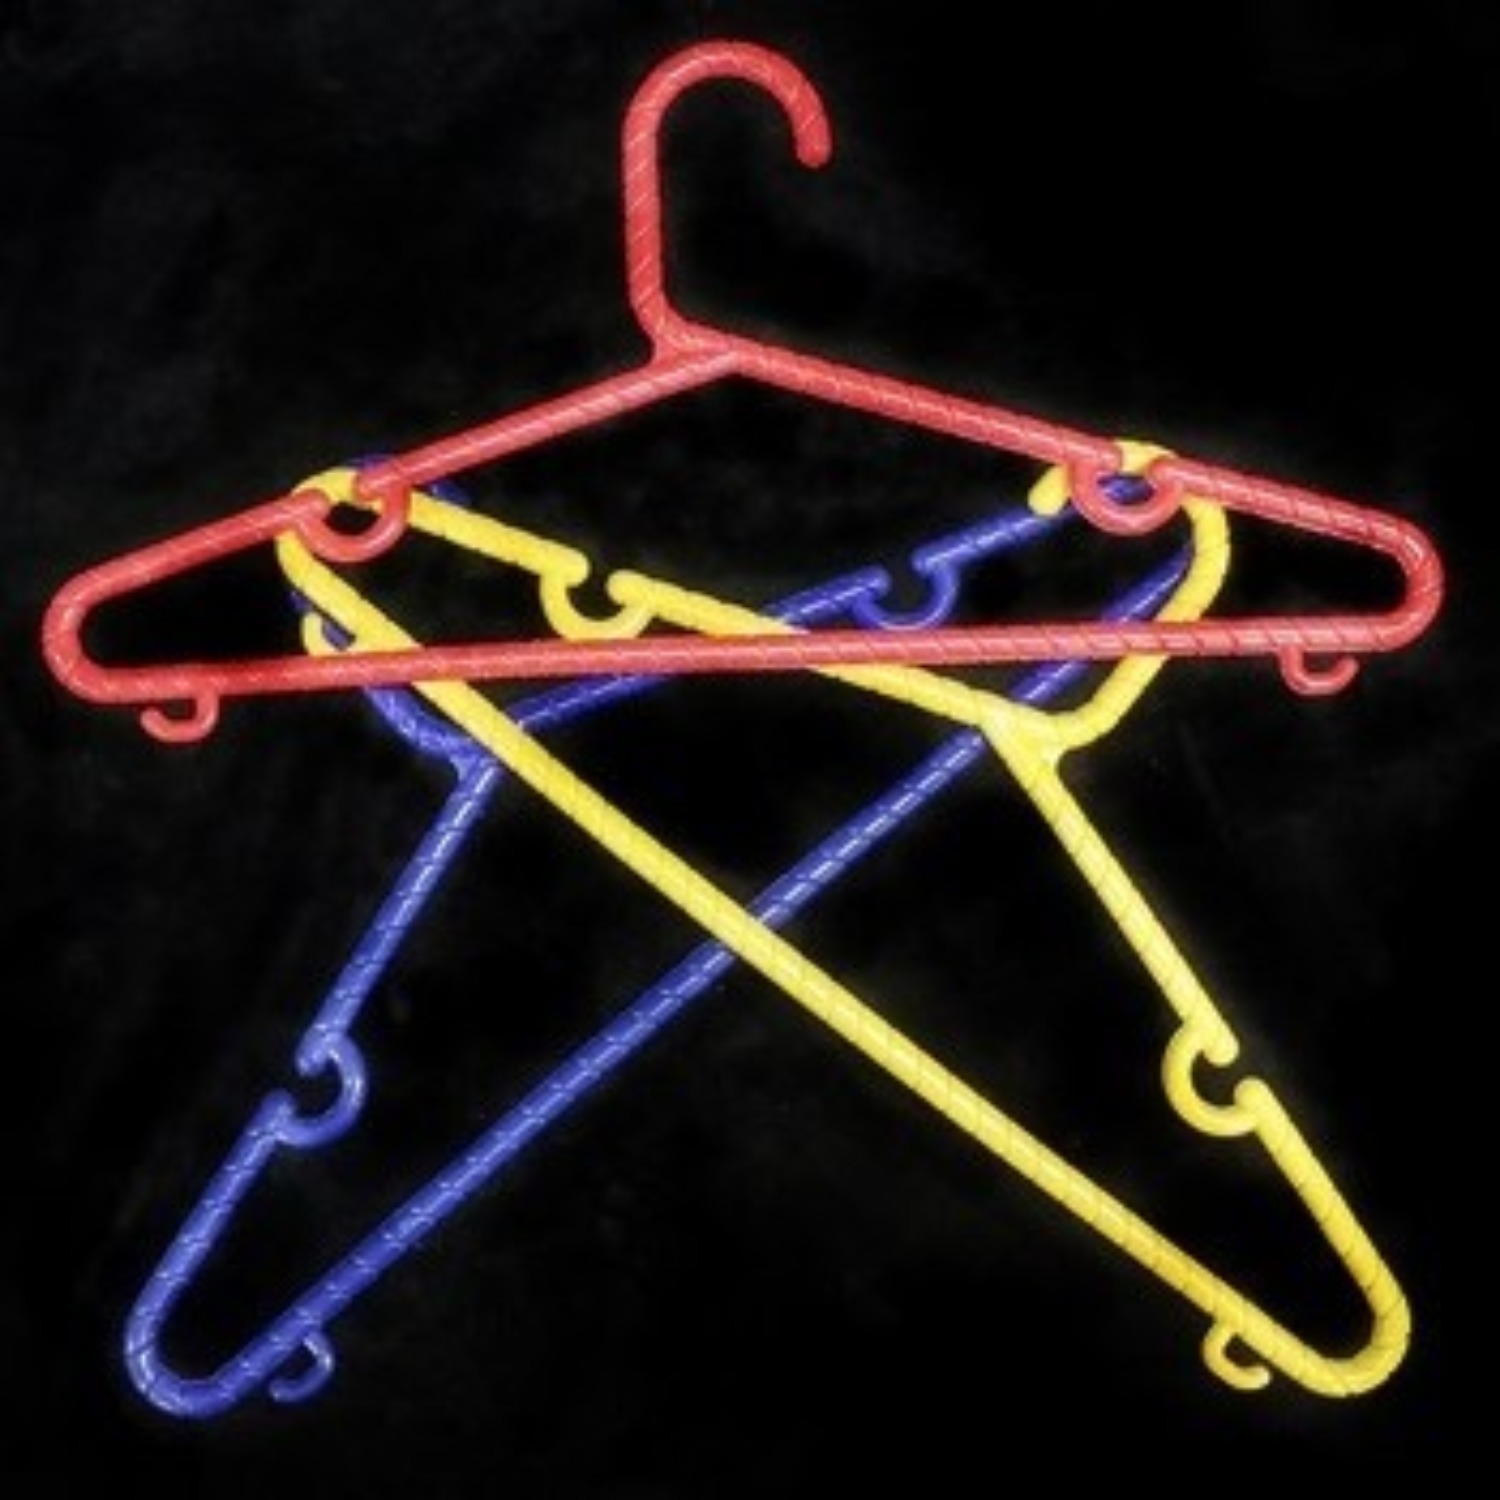 [컬러링킹행거] Color Linking Hangers 옷걸이가 서로 연결되었다가 또 갑자기 분리됩니다.